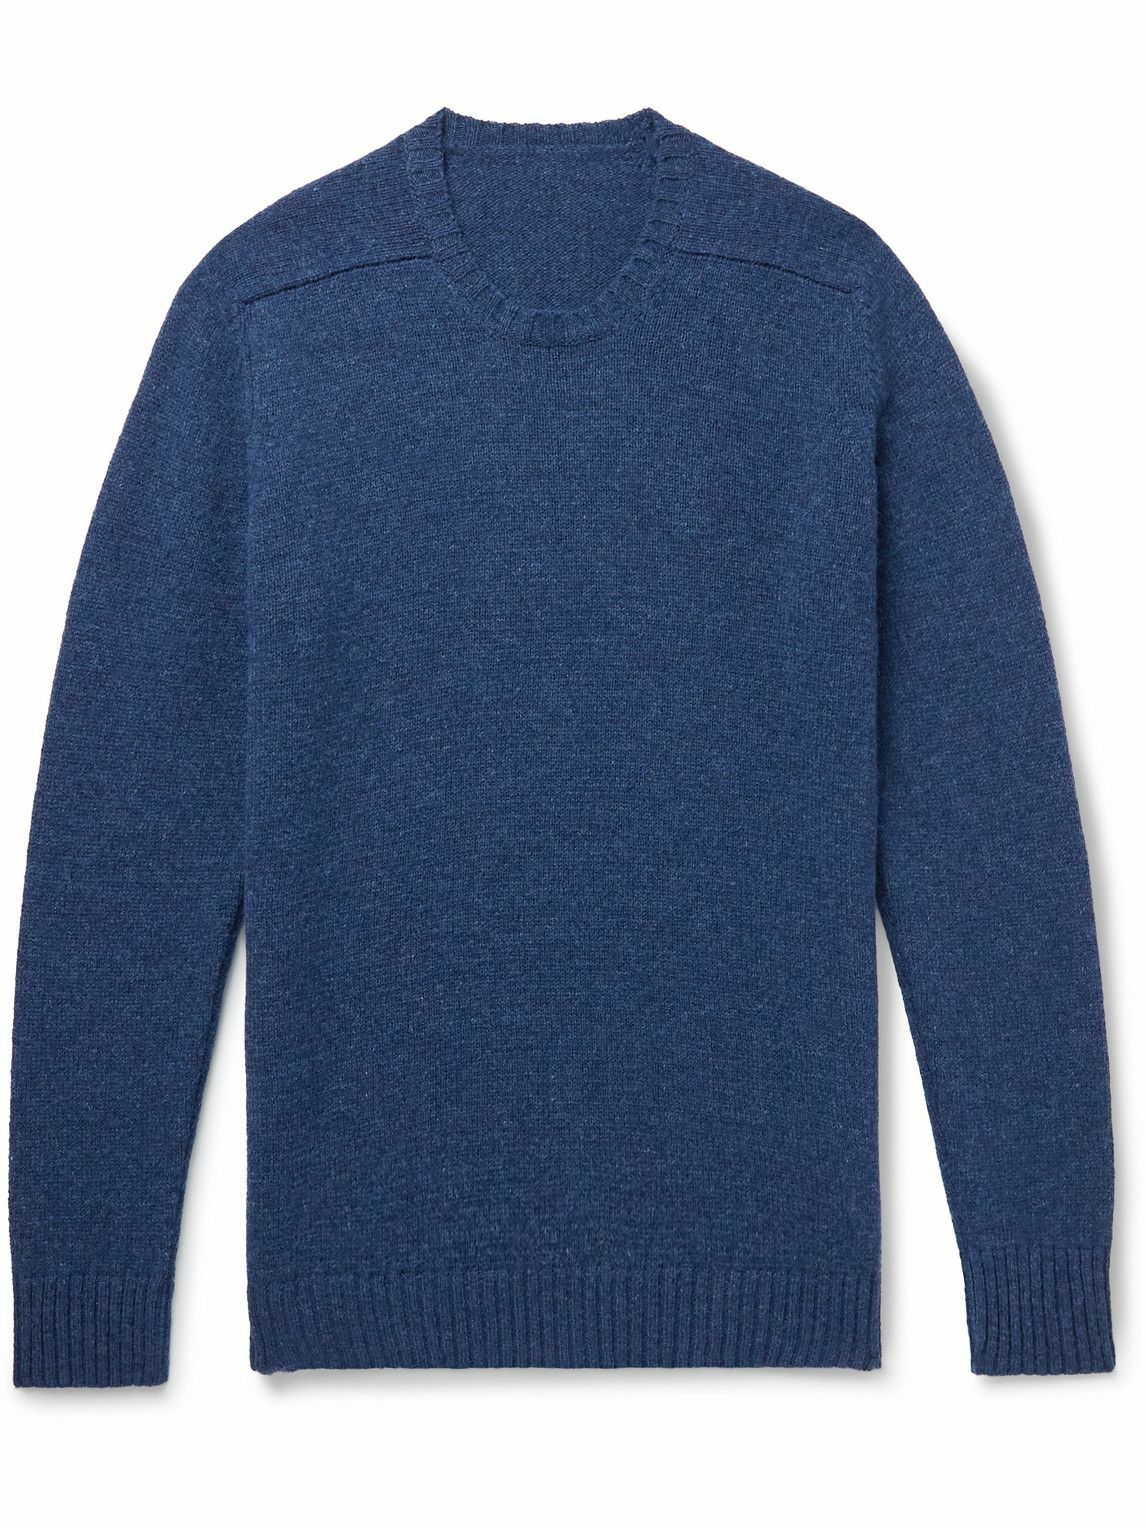 Anderson & Sheppard - Shetland Wool Sweater - Blue Anderson & Sheppard